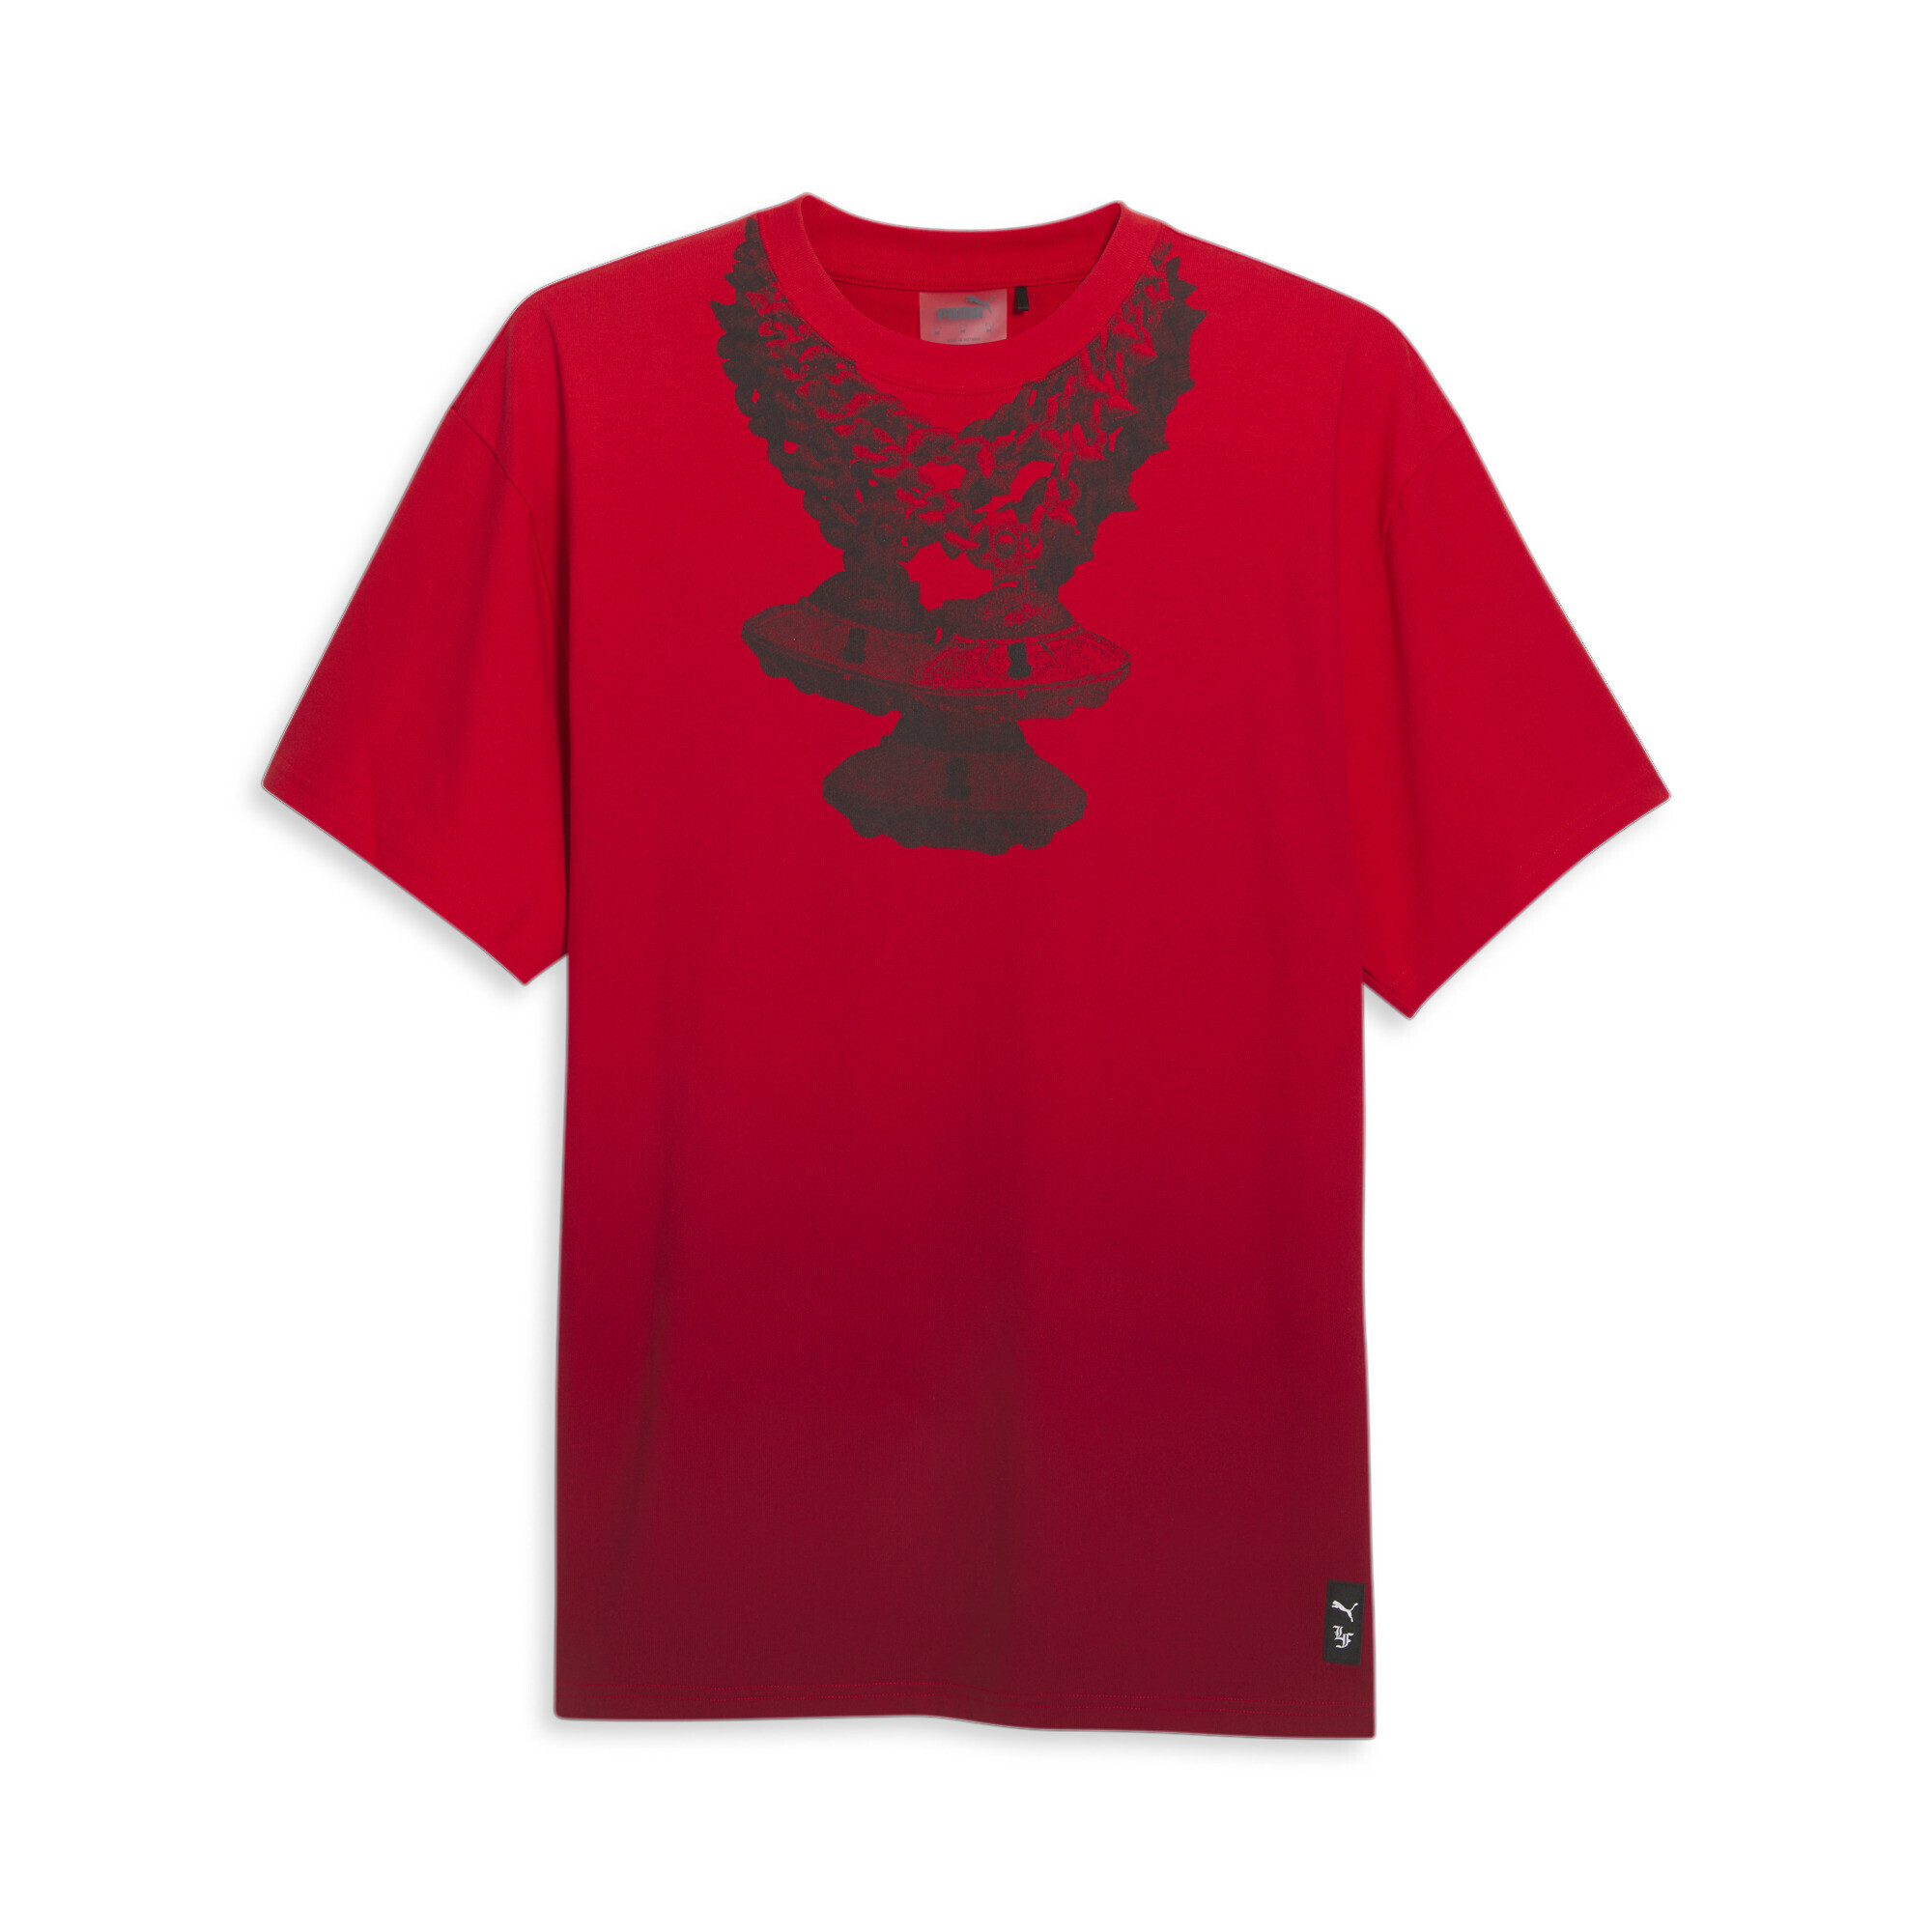 Men's PUMA X LAFRANCÃ T-Shirt In Red, Size Large